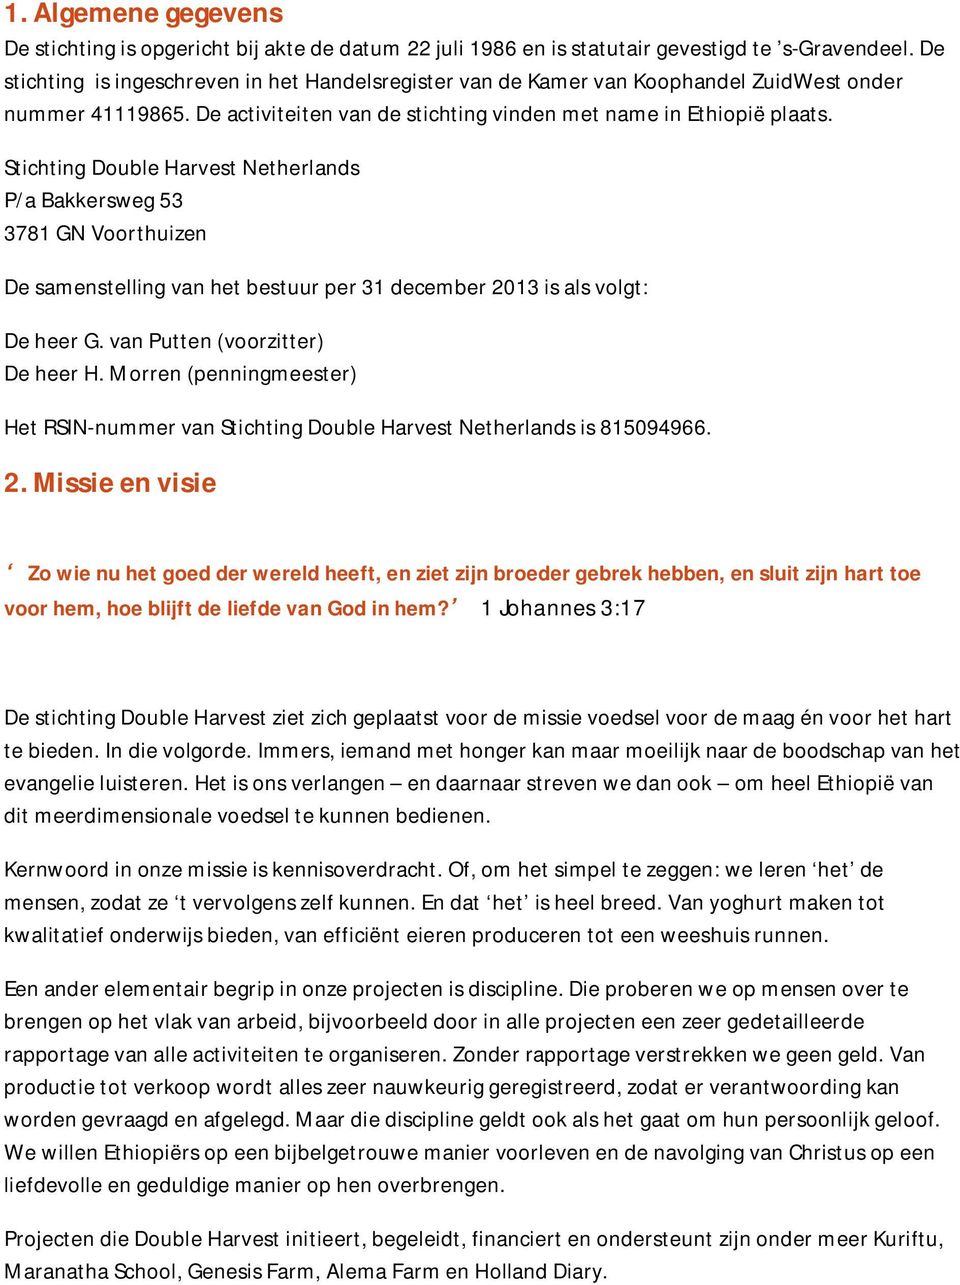 Stichting Double Harvest Netherlands P/a Bakkersweg 53 3781 GN Voorthuizen De samenstelling van het bestuur per 31 december 2013 is als volgt: De heer G. van Putten (voorzitter) De heer H.